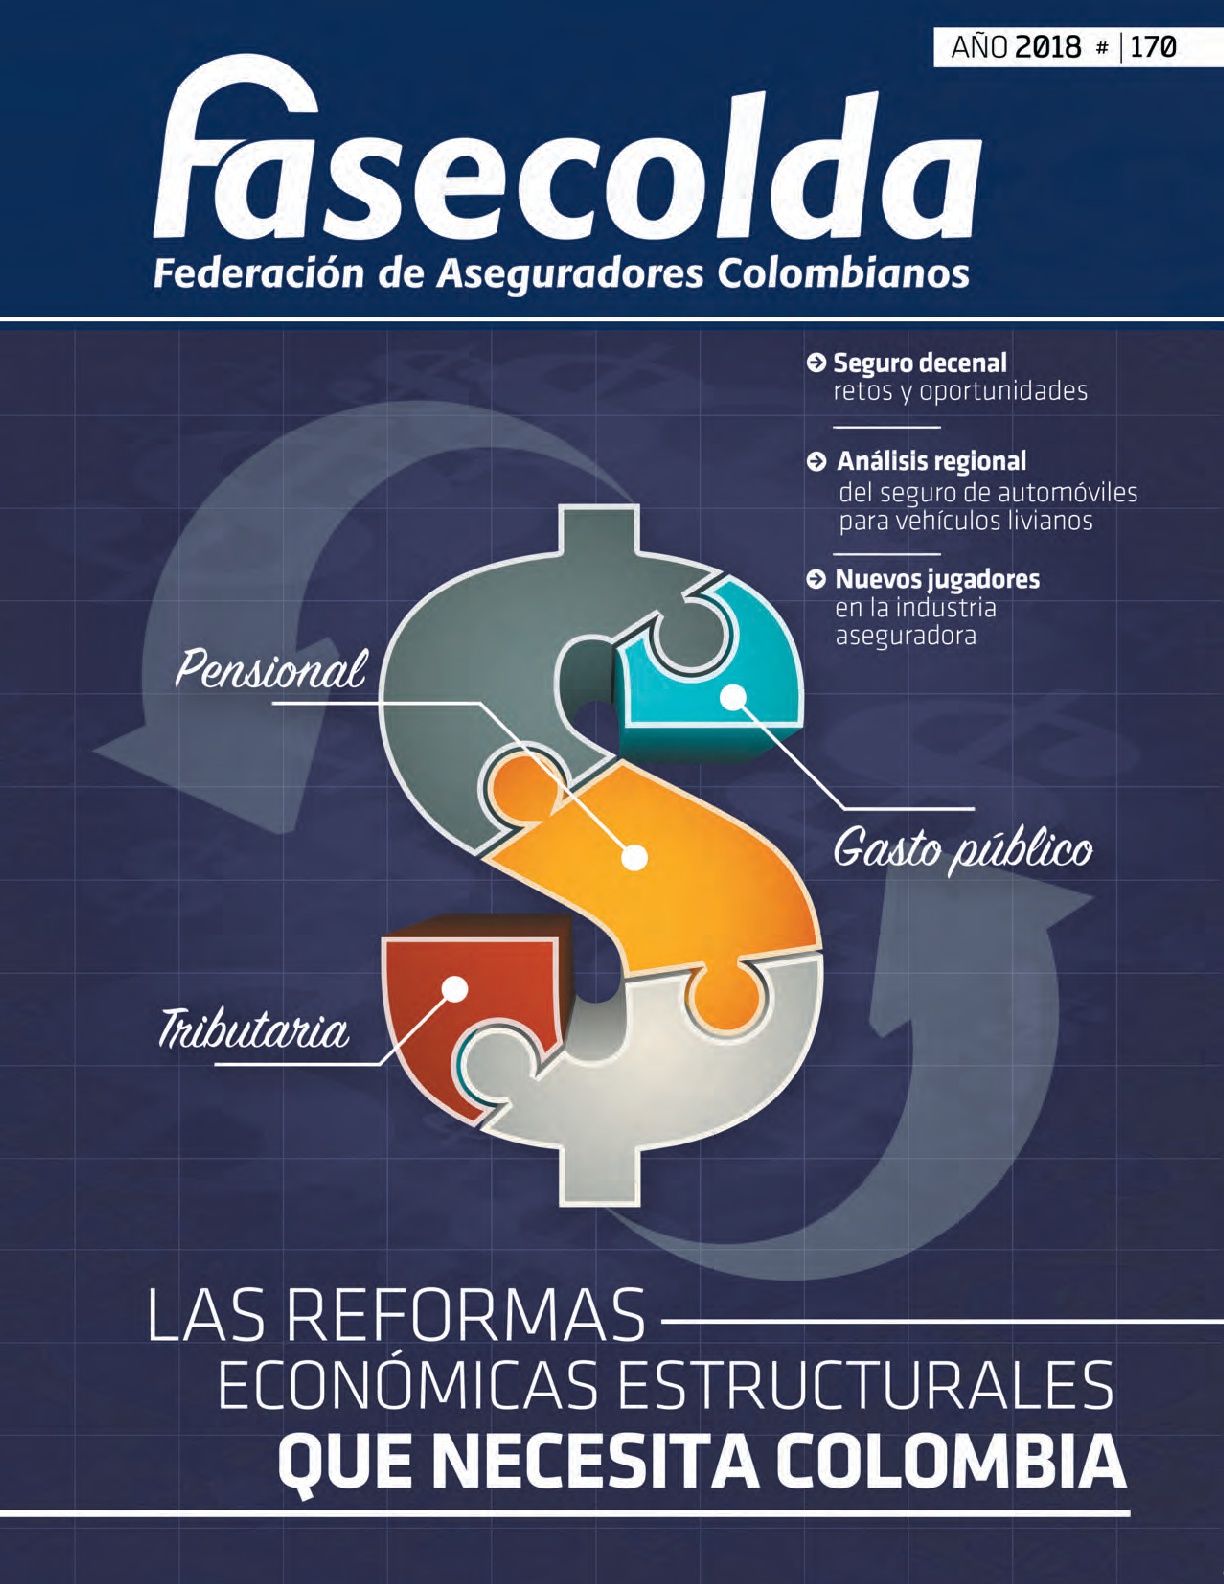 Fasecolda Federación de Aseguradores Colombianos. Número 170 año 2018. Las reformas estructurales que necesita Colombia